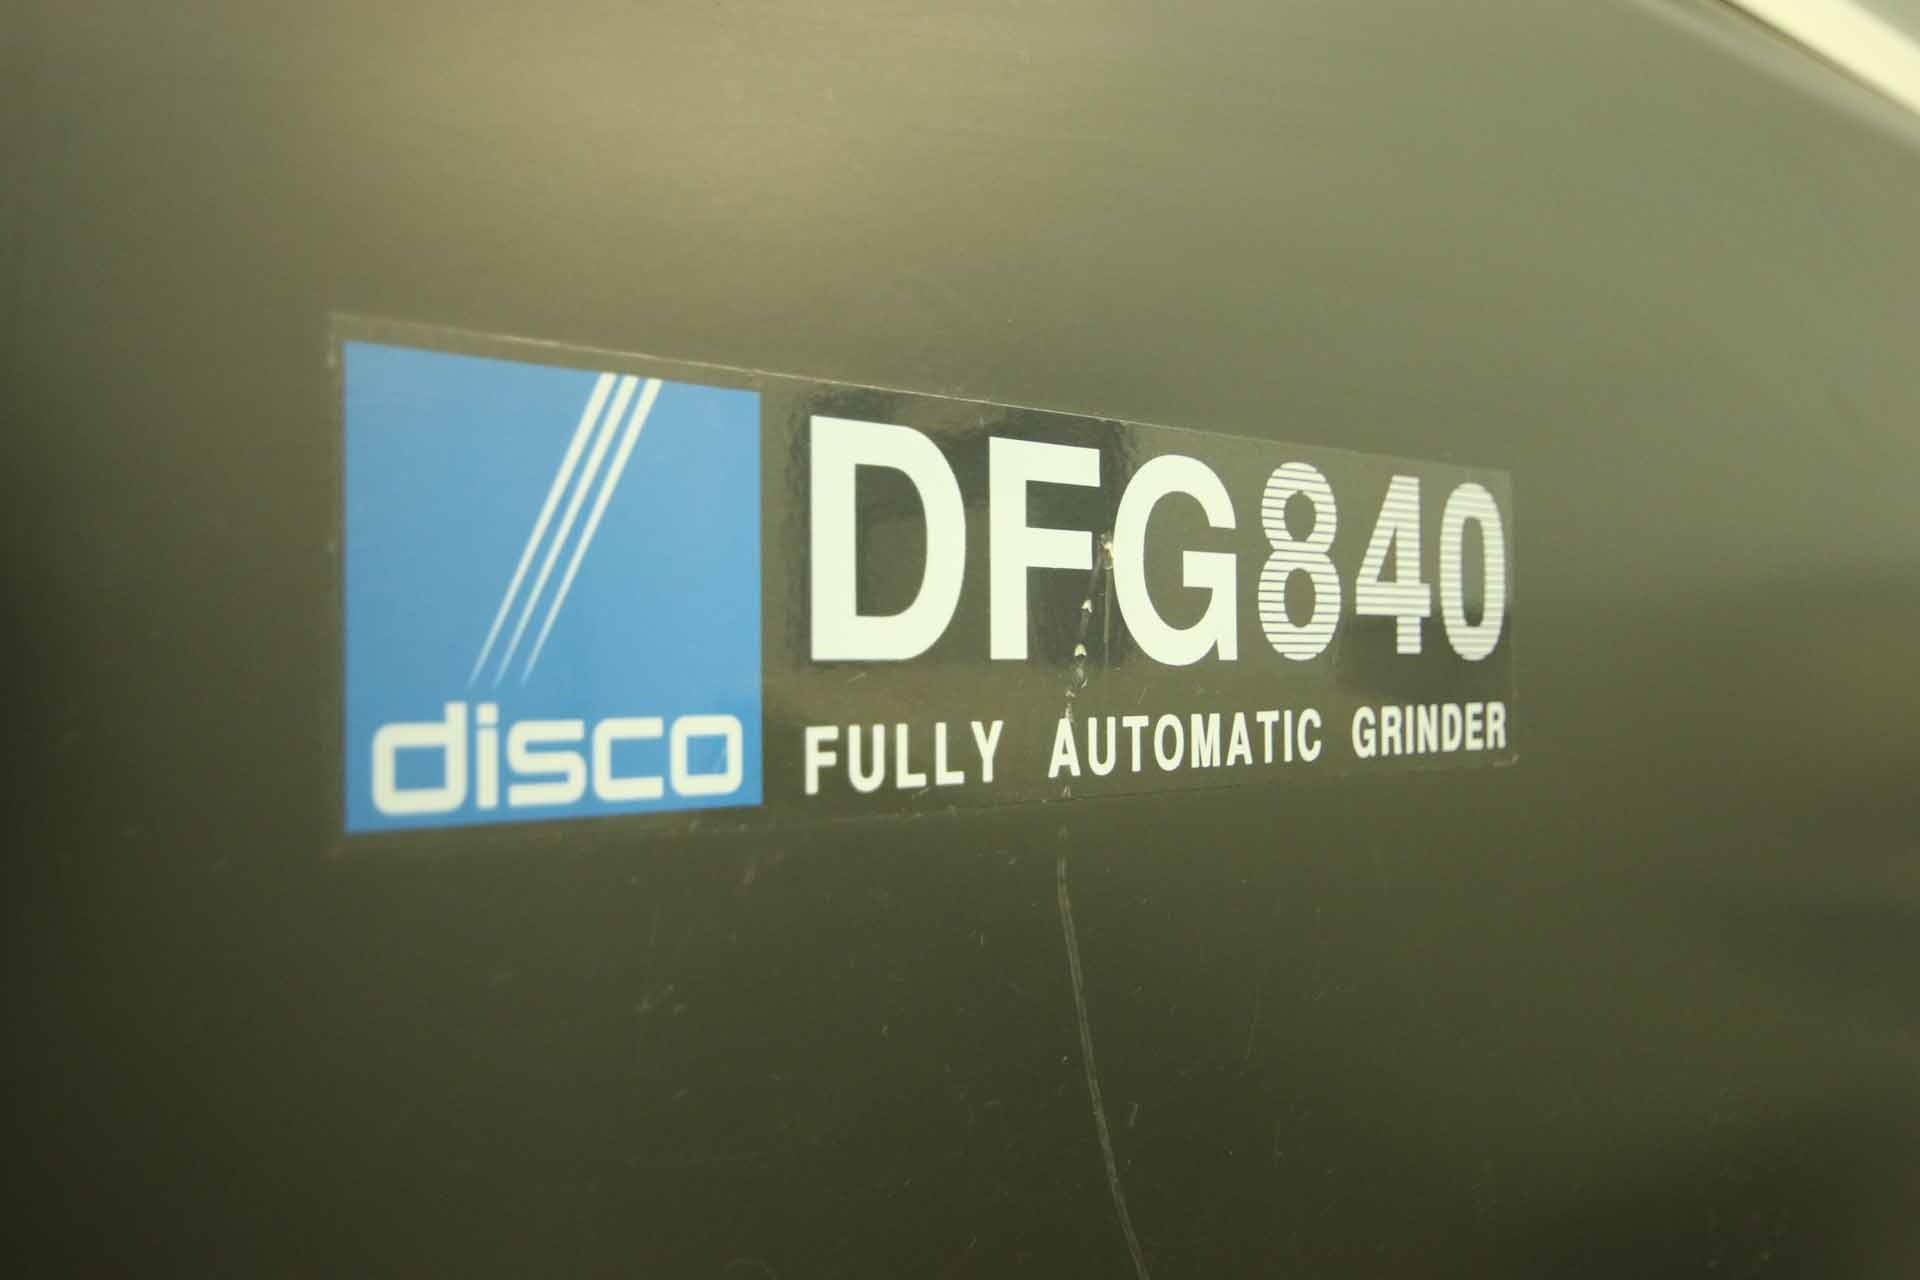 圖為 已使用的 DISCO DFG 840 待售